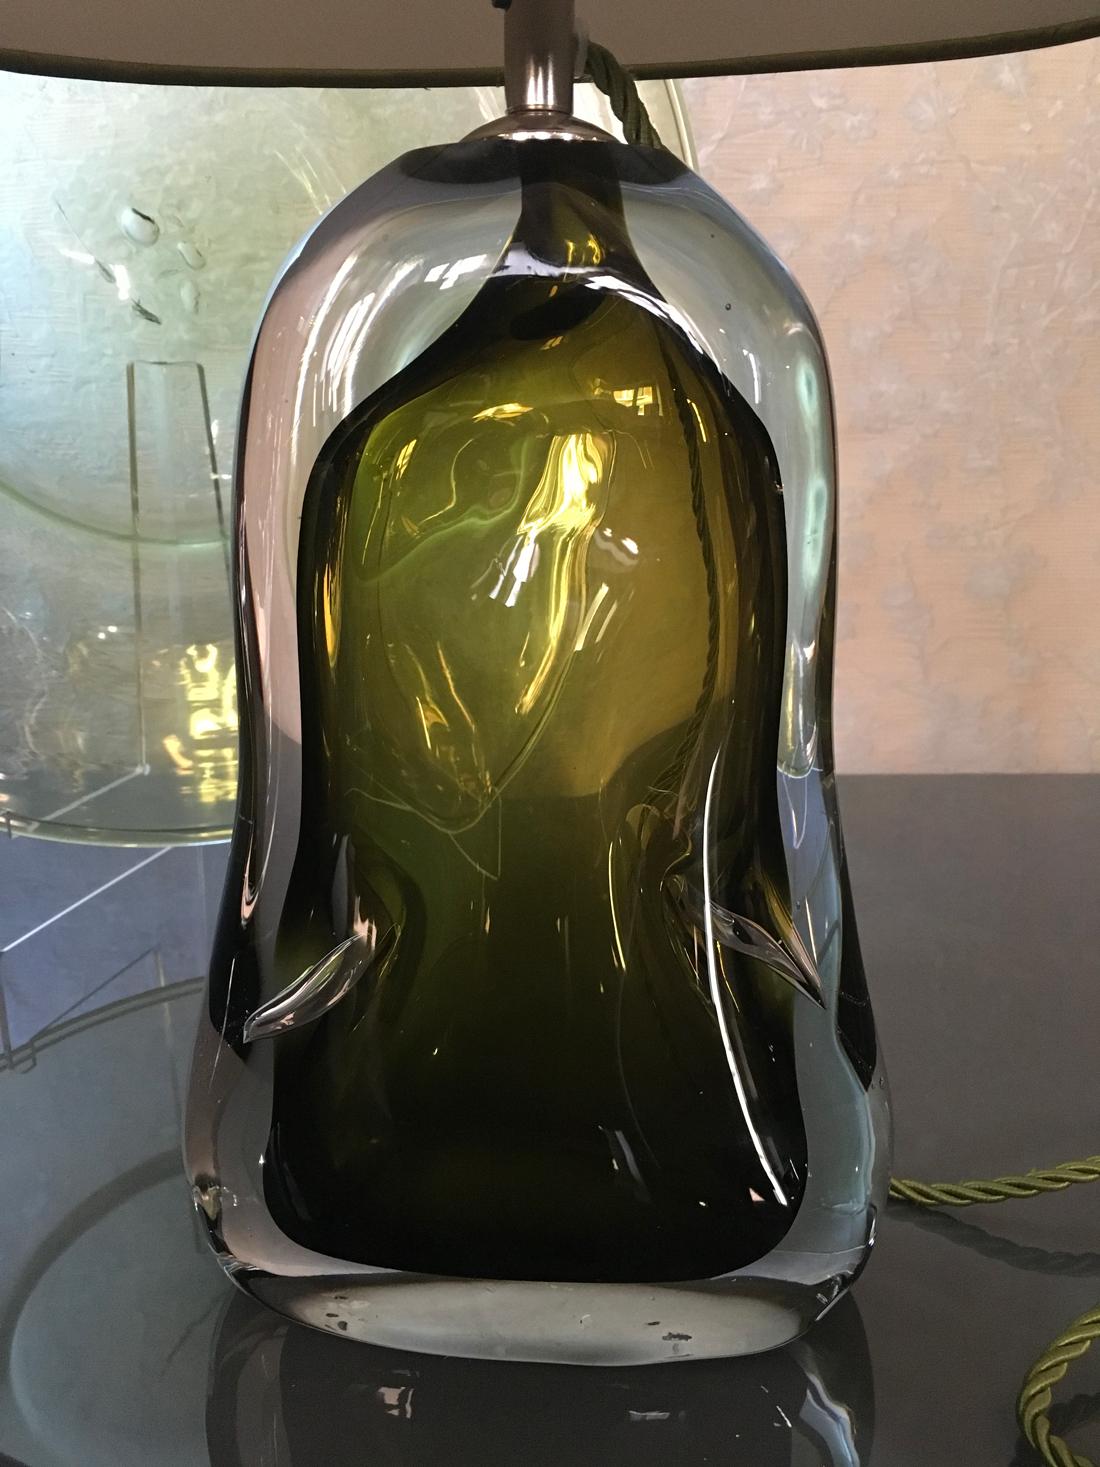 Cette lampe de table contemporaine en verre soufflé vert est une pièce de haute qualité artisanale et a été fabriquée au Royaume-Uni.
Cette lampe de table peut être considérée comme un objet d'art pour la présence solide du verre artisanal vénitien.